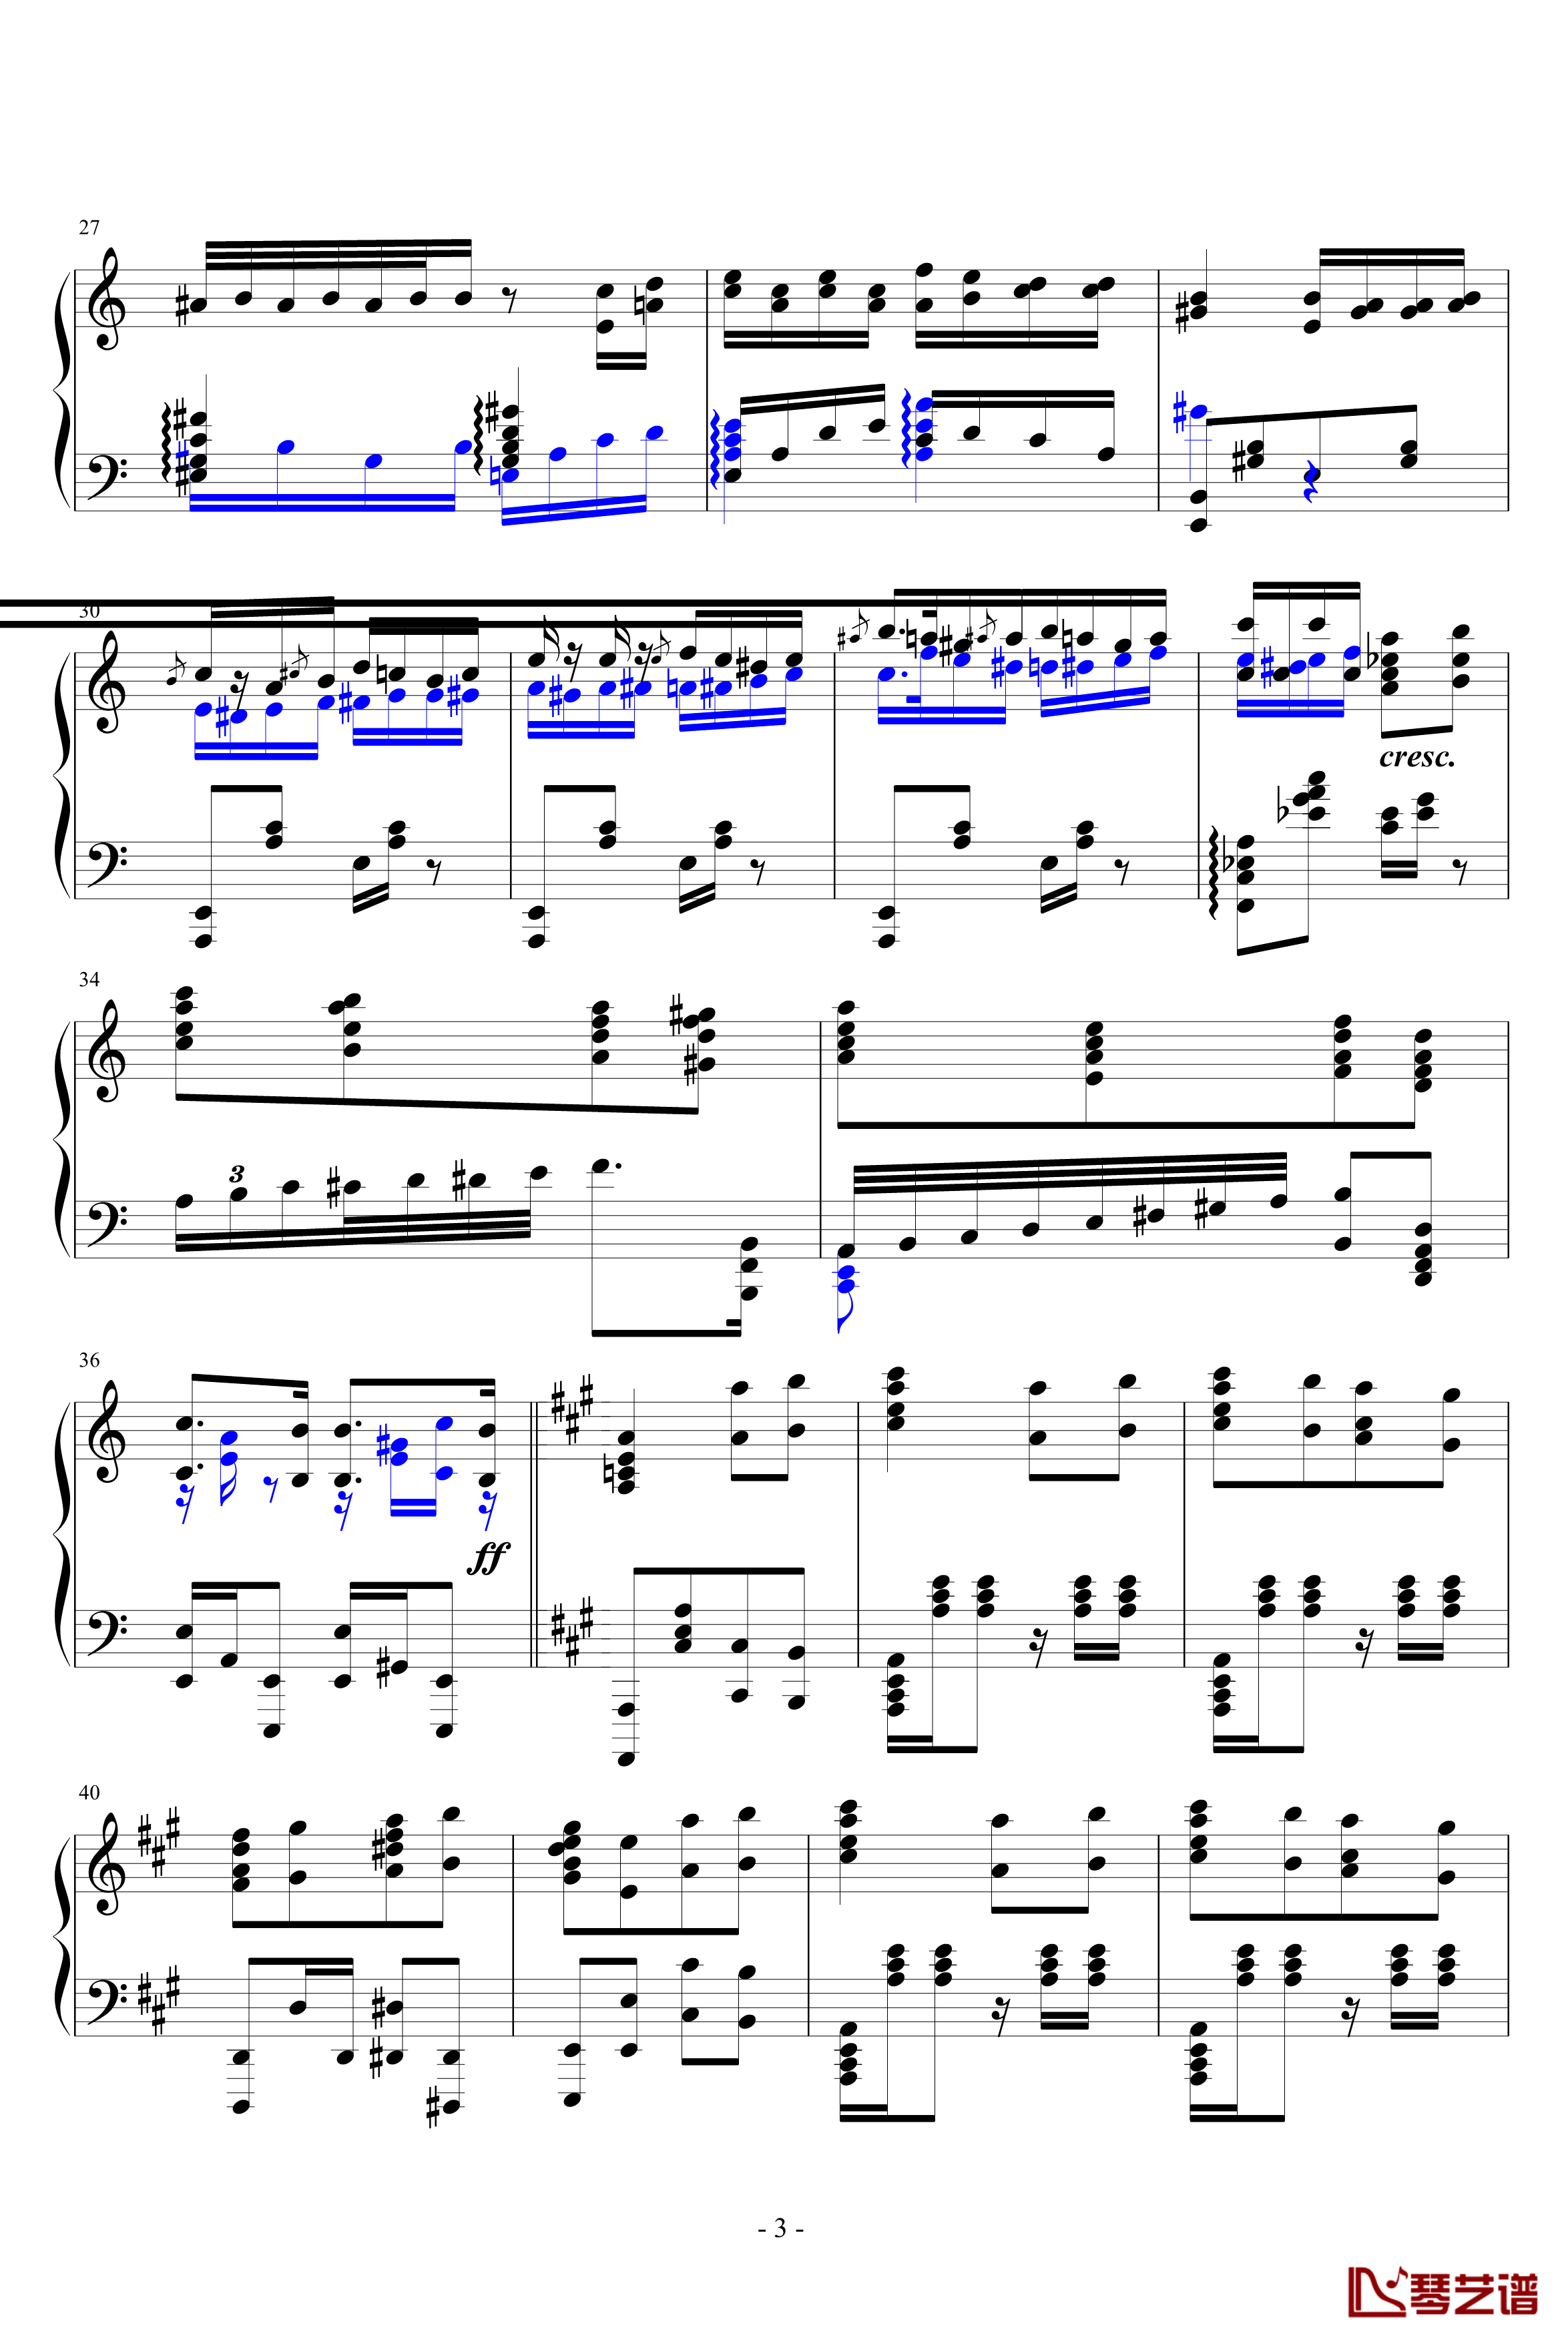 瓦洛多斯土耳其钢琴谱-爵士版-修正-瓦洛多斯3